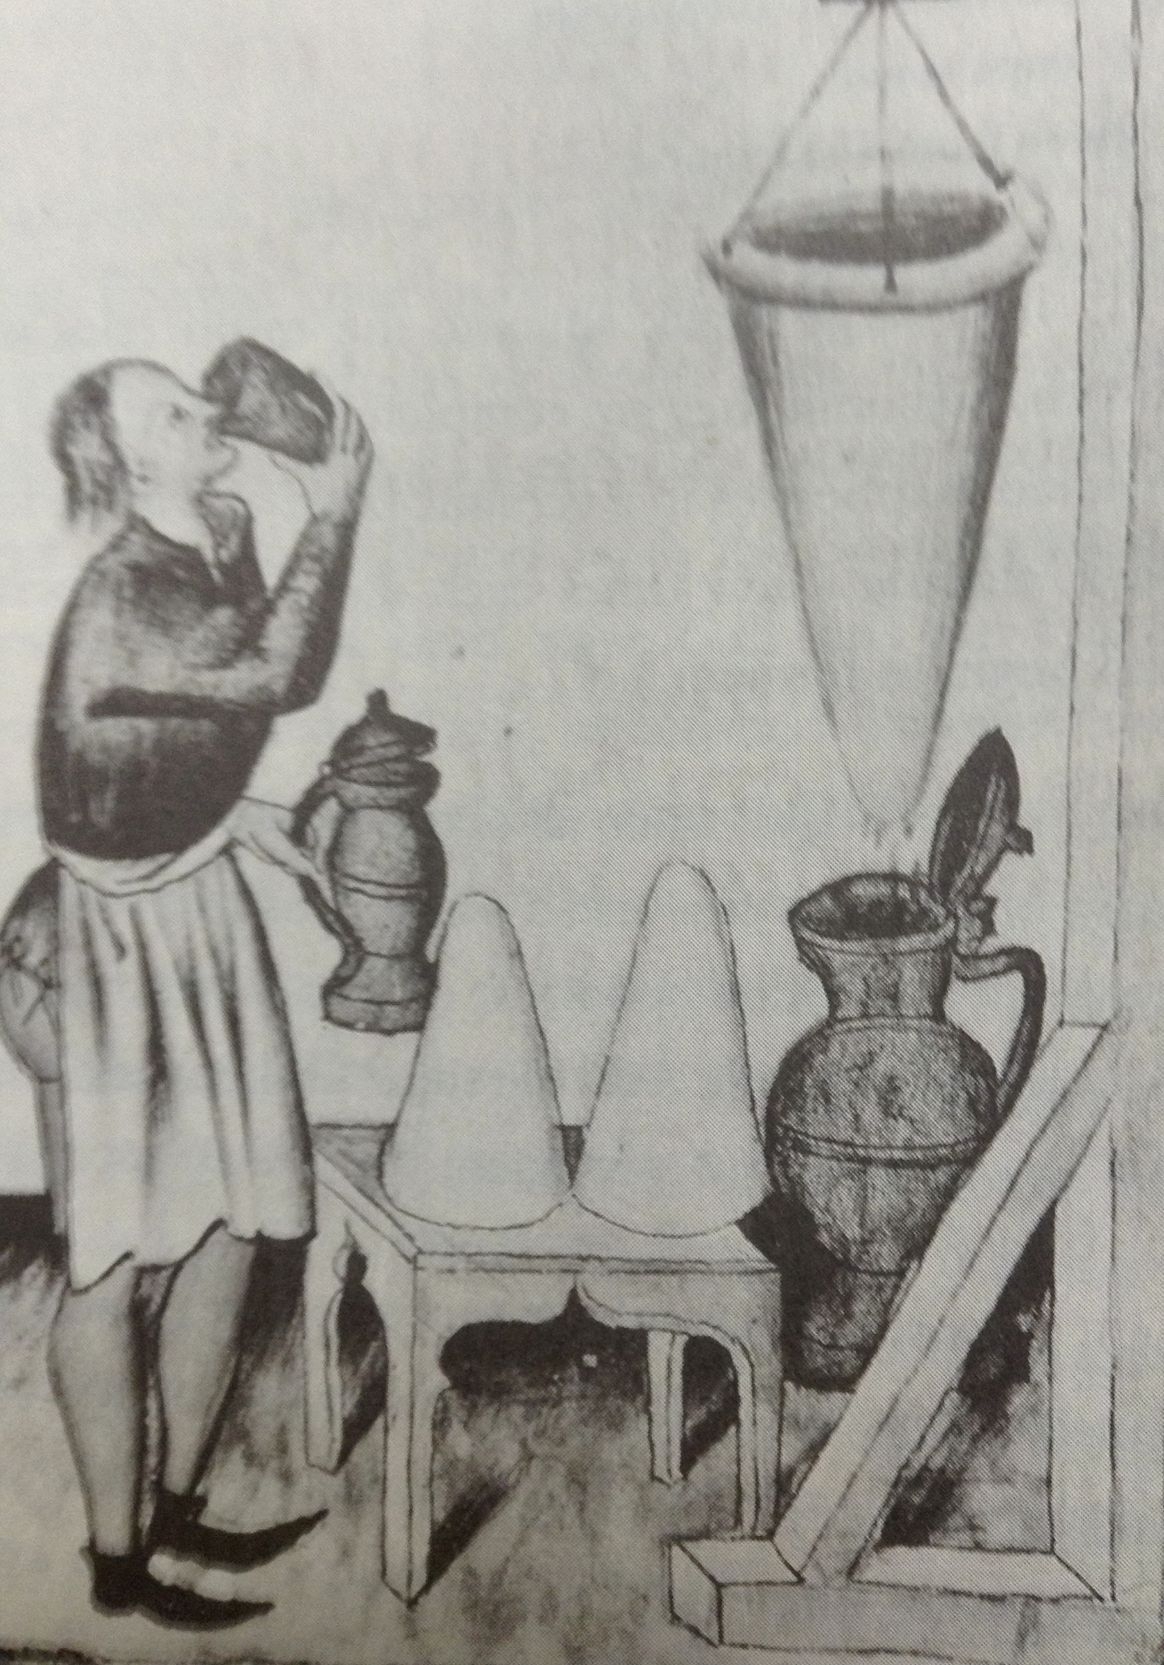 Medieval Sugar Merchant with Sugar Cones